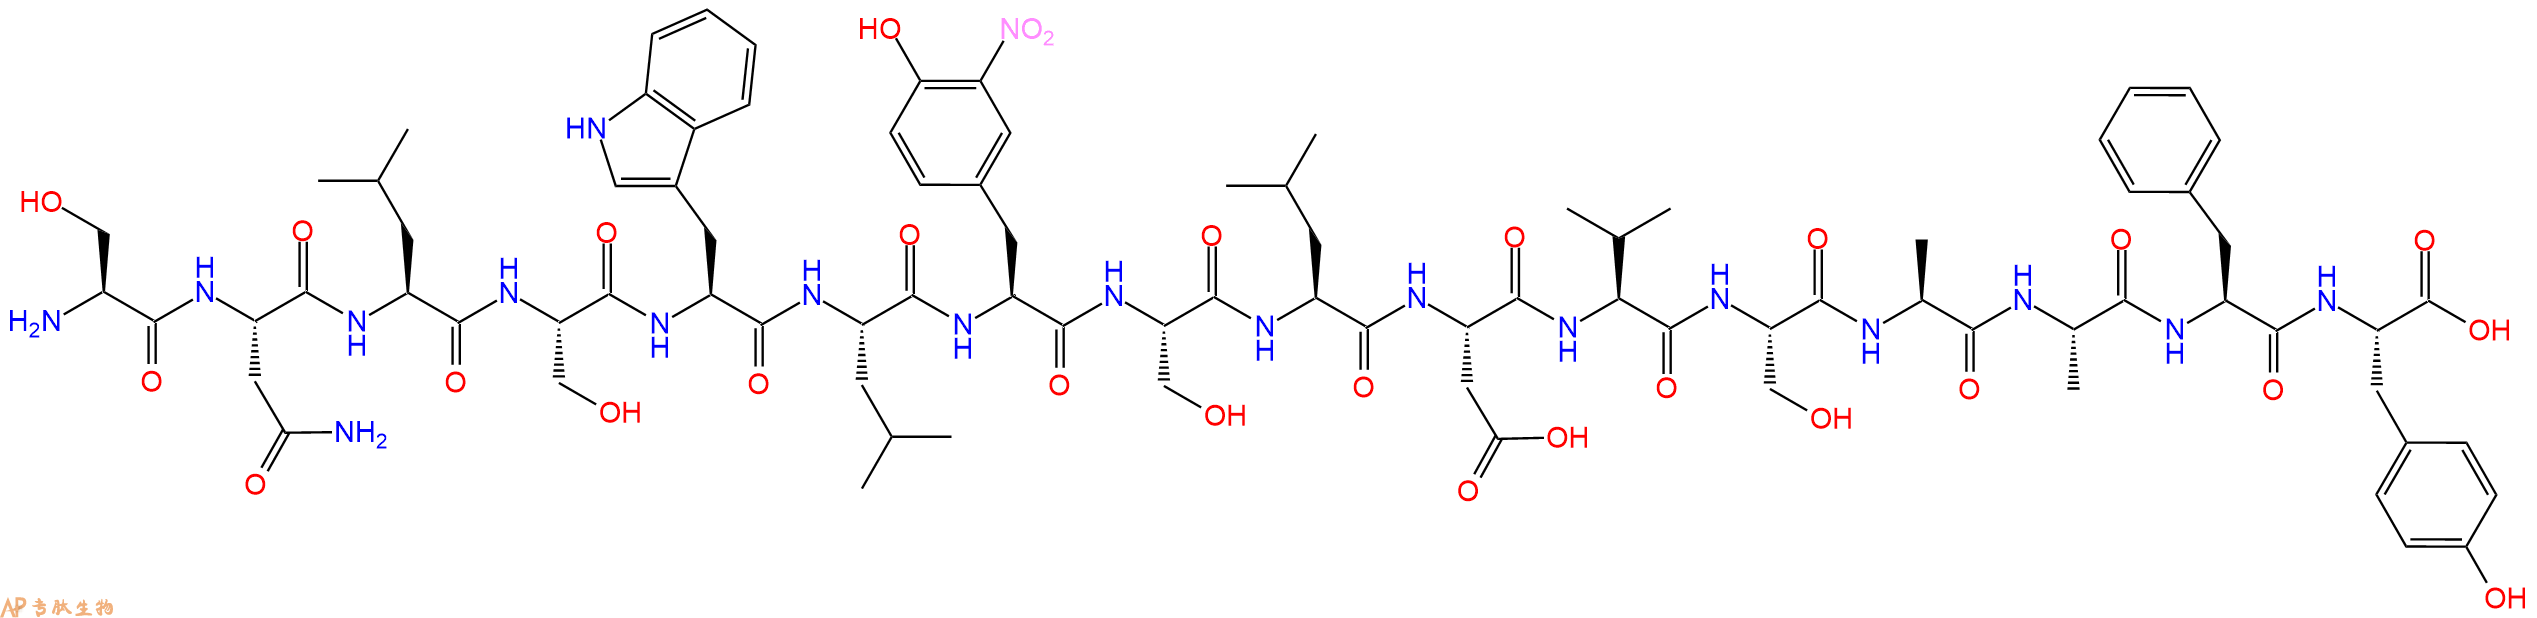 专肽生物产品H2N-Ser-Asn-Leu-Ser-Trp-Leu-Tyr(3NO2)-Ser-Leu-Asp-